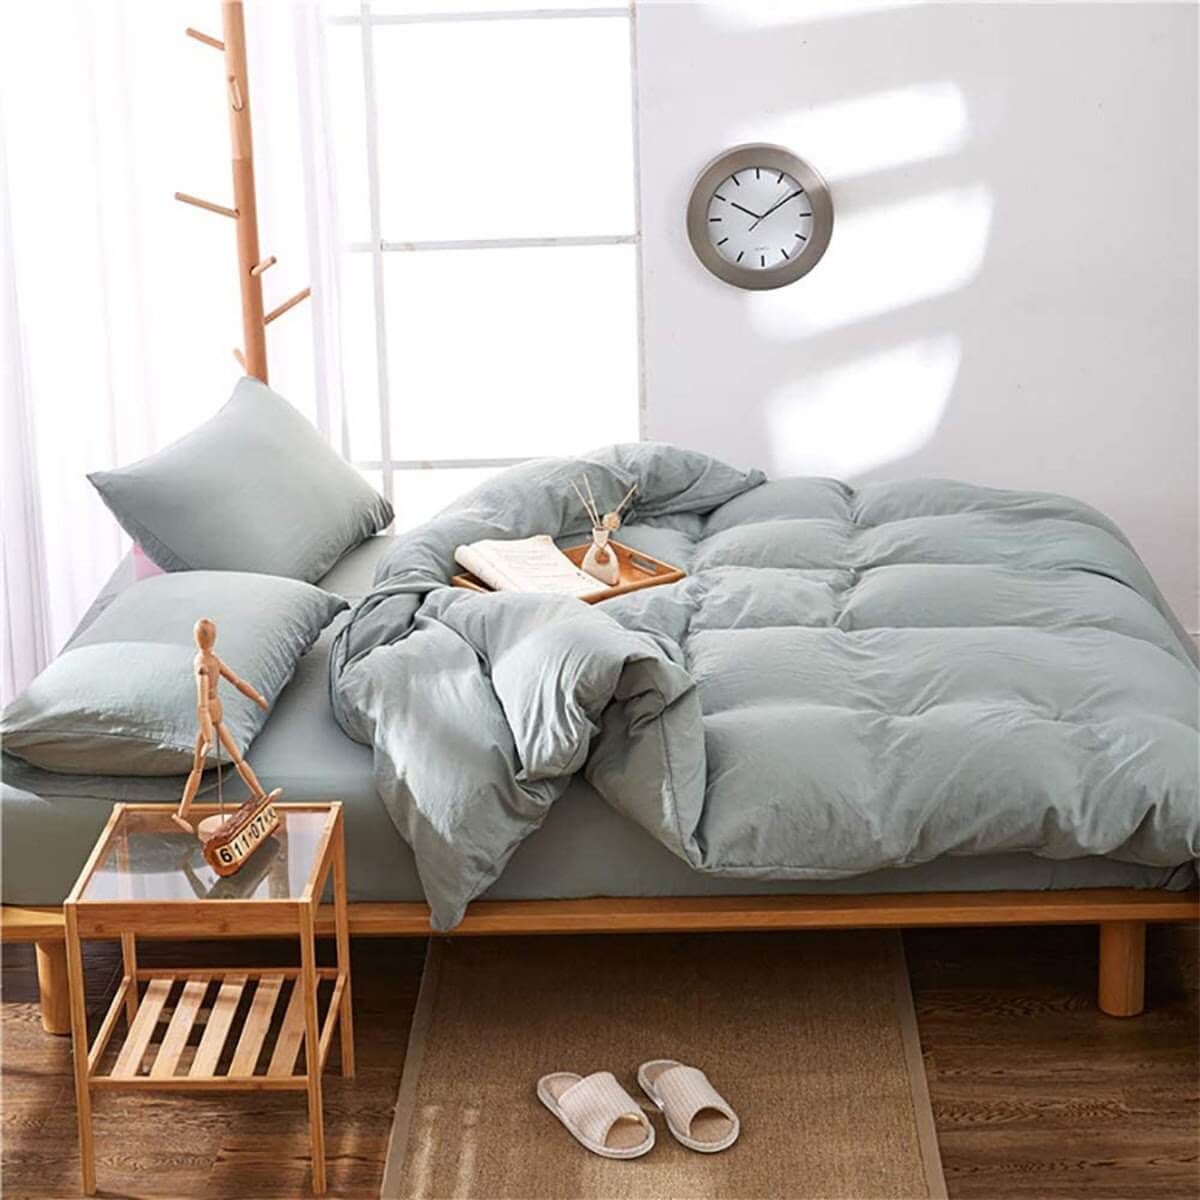  Drap giường chần bông hiểu đơn giản là loại drap giường được thiết kế thêm một lớp bông 